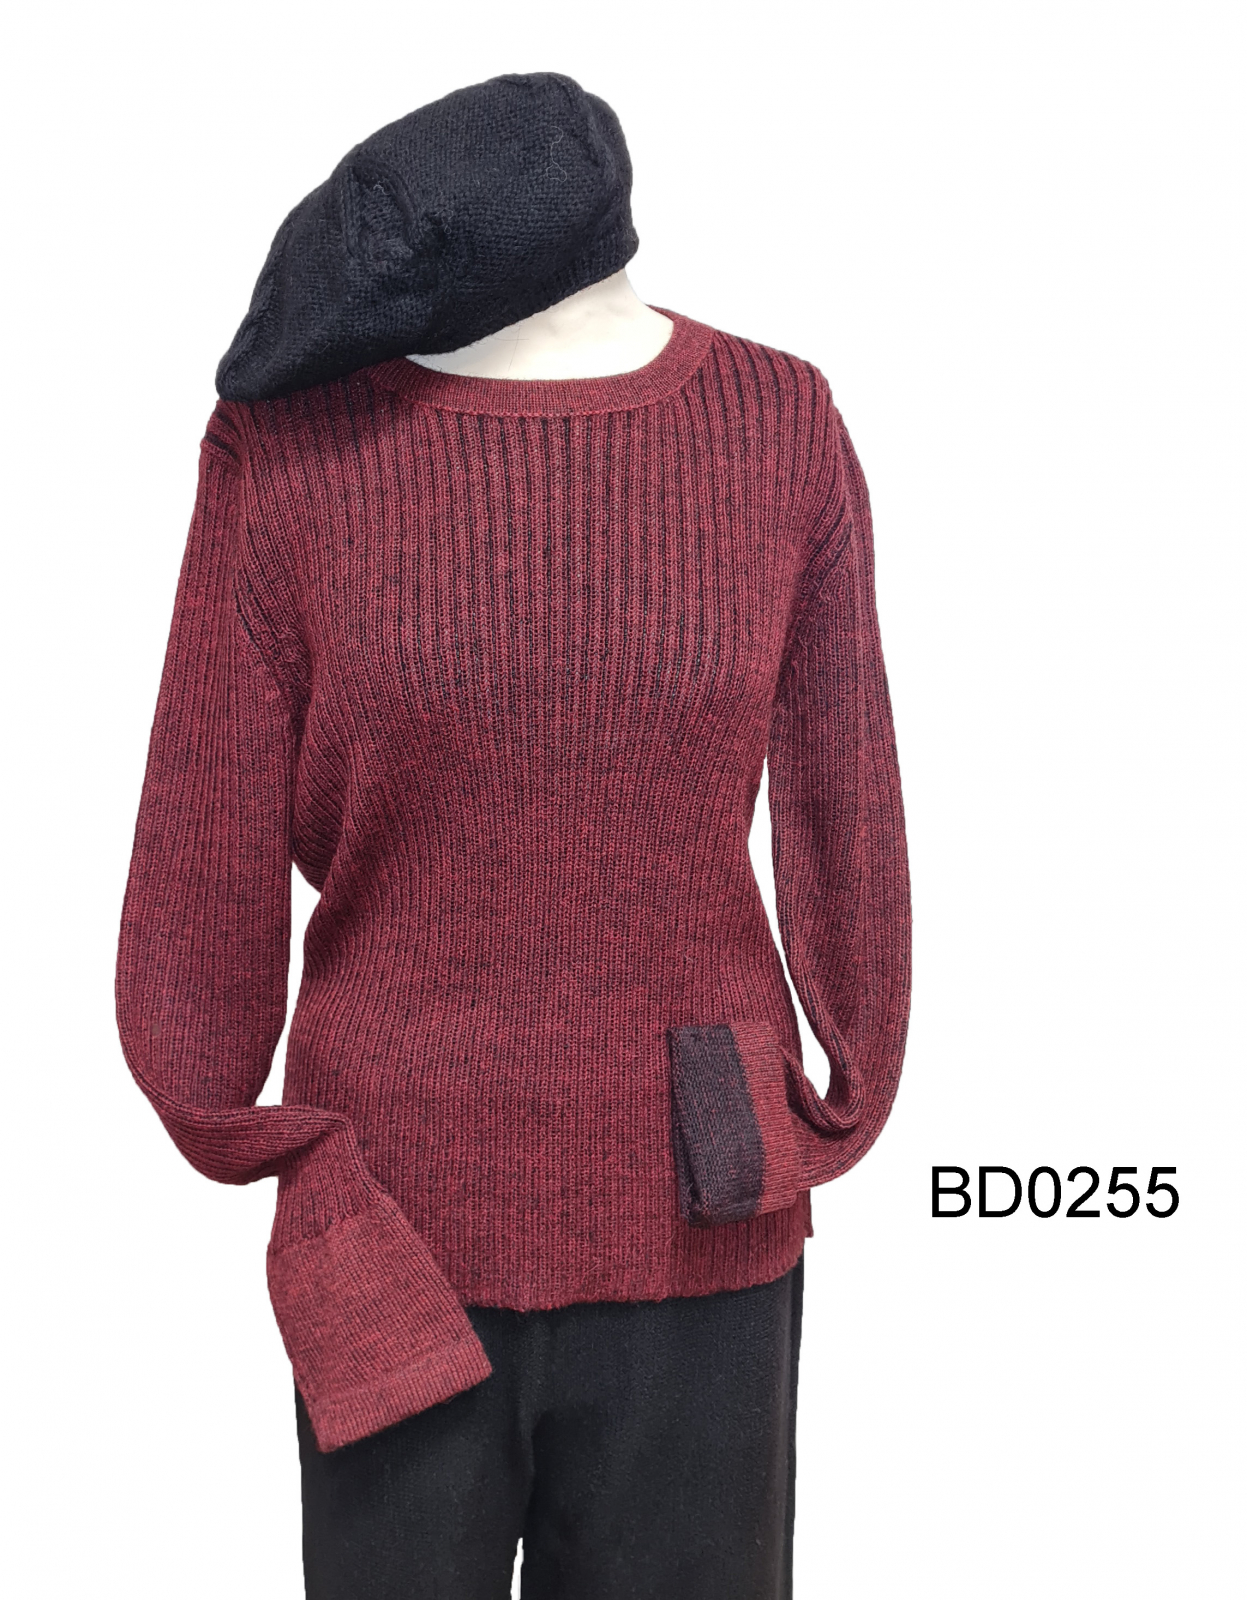 Round-Neck Alpaca Sweater for Women und Men